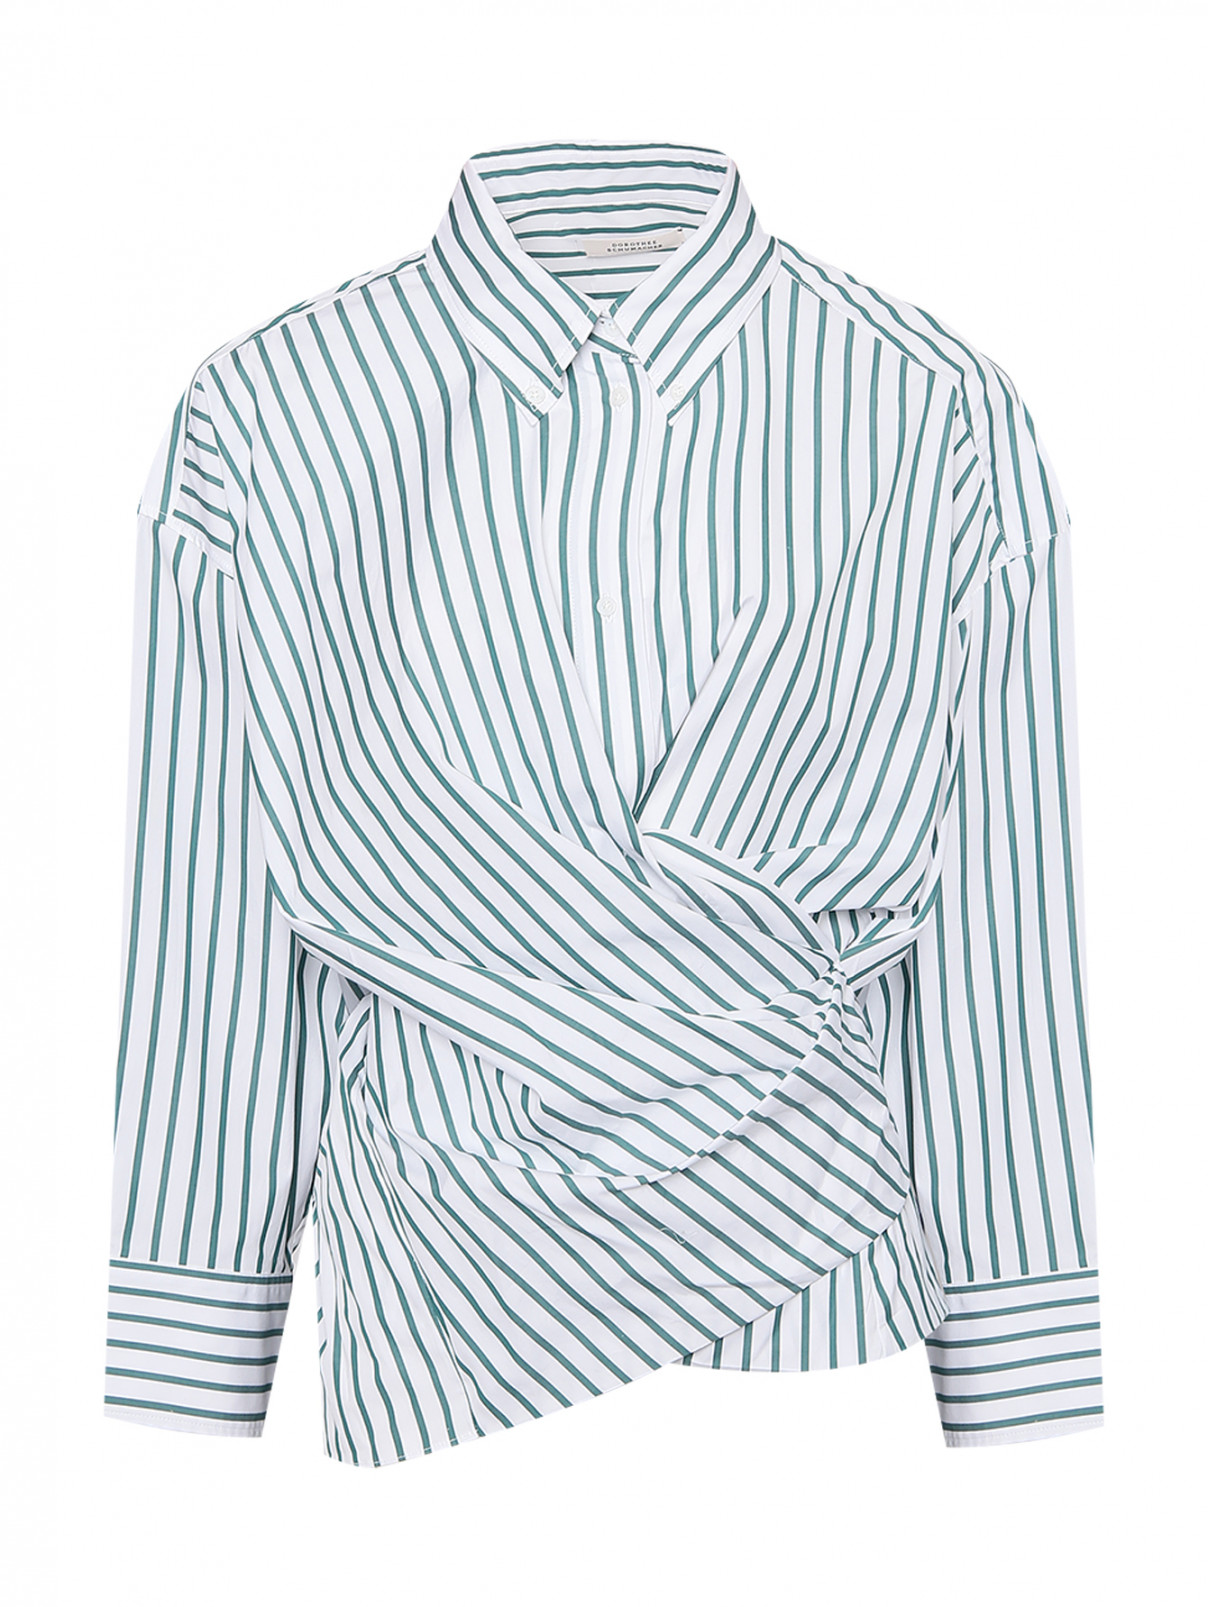 Блуза из хлопка с узором полоска Dorothee Schumacher  –  Общий вид  – Цвет:  Узор